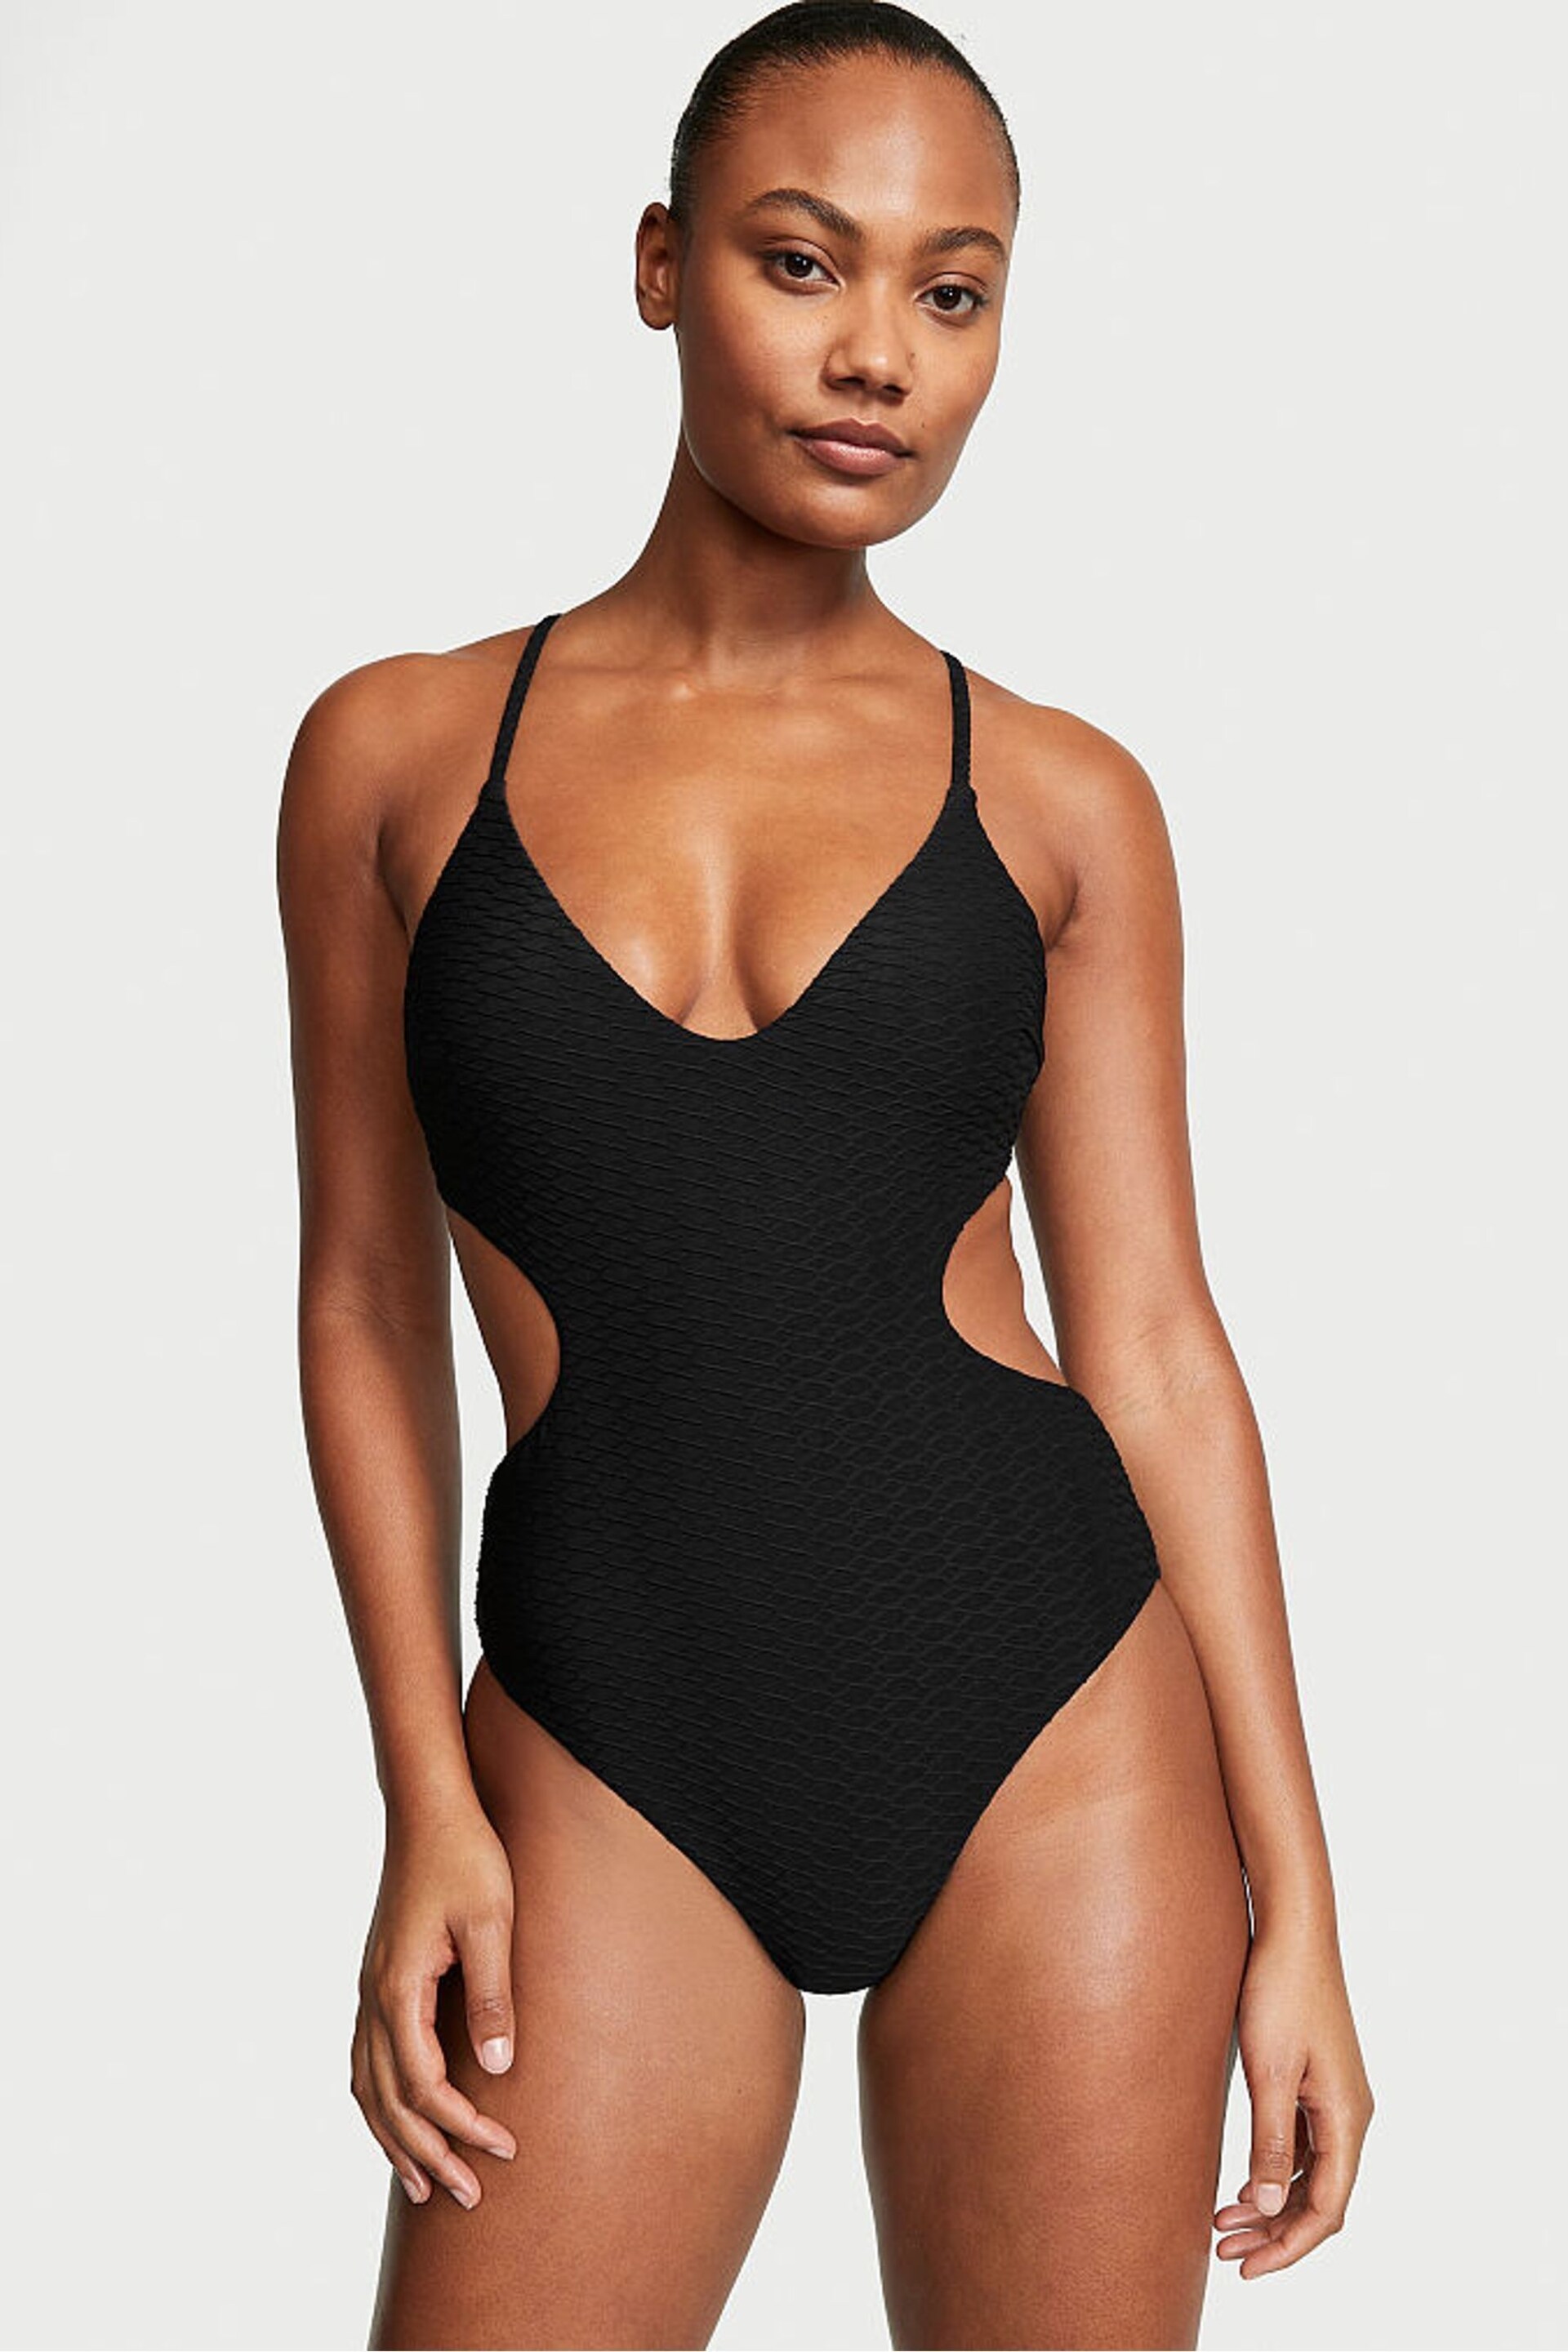 Victoria's Secret Black Fishnet Cutout Swimsuit - Image 1 of 3